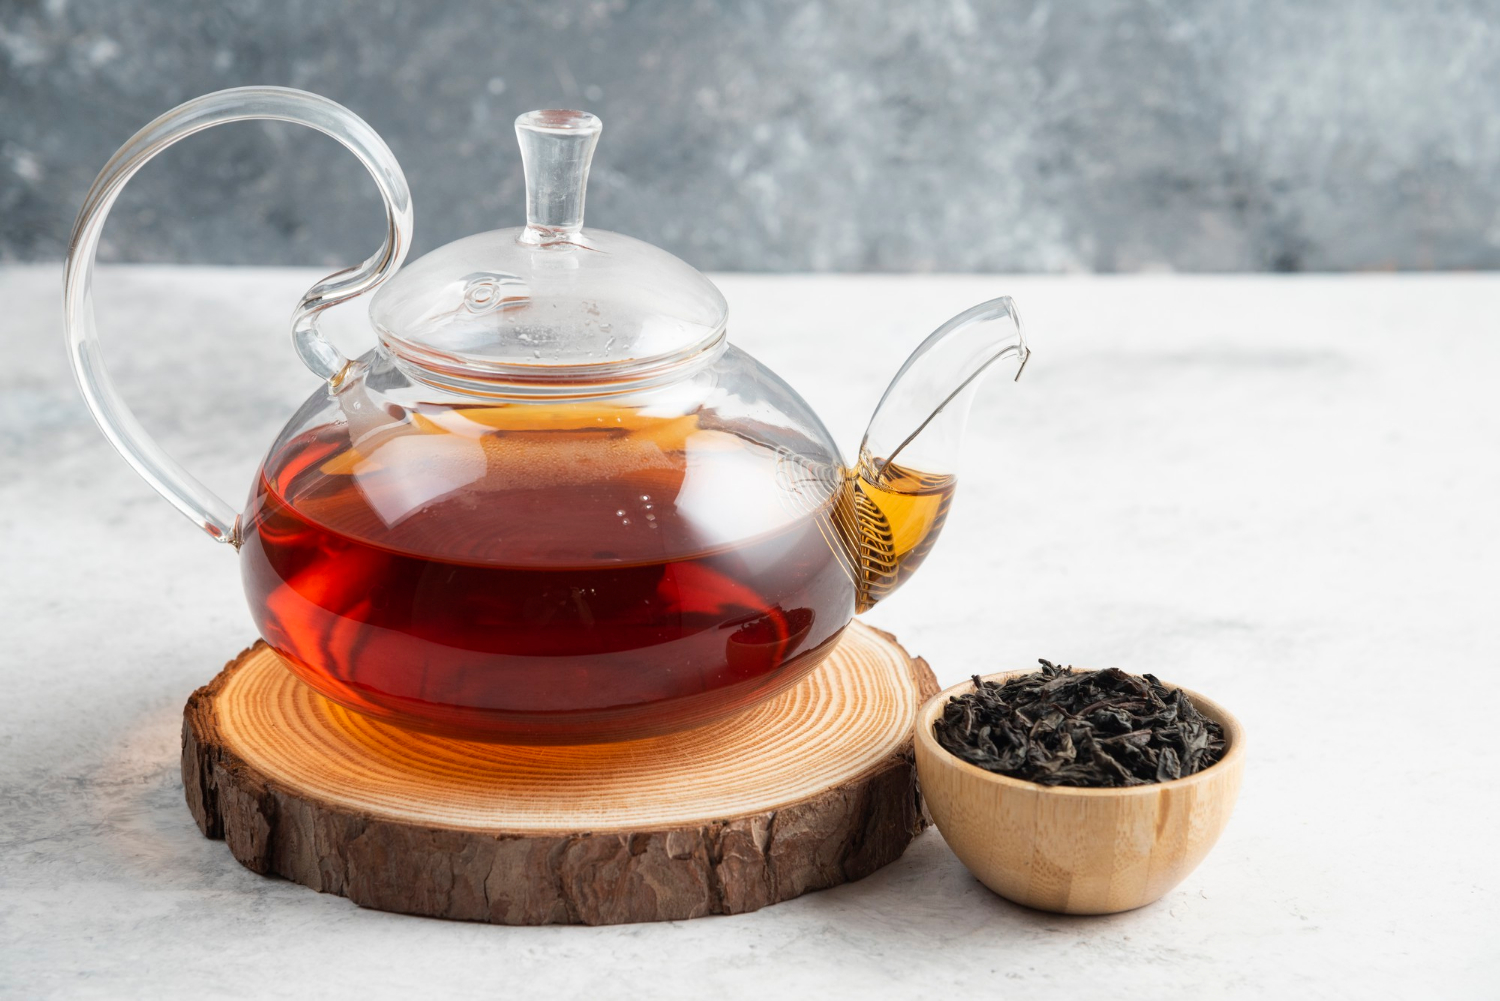 Ученые провели анализ и назвали самый лучший вид чая для борьбы с COVID-19